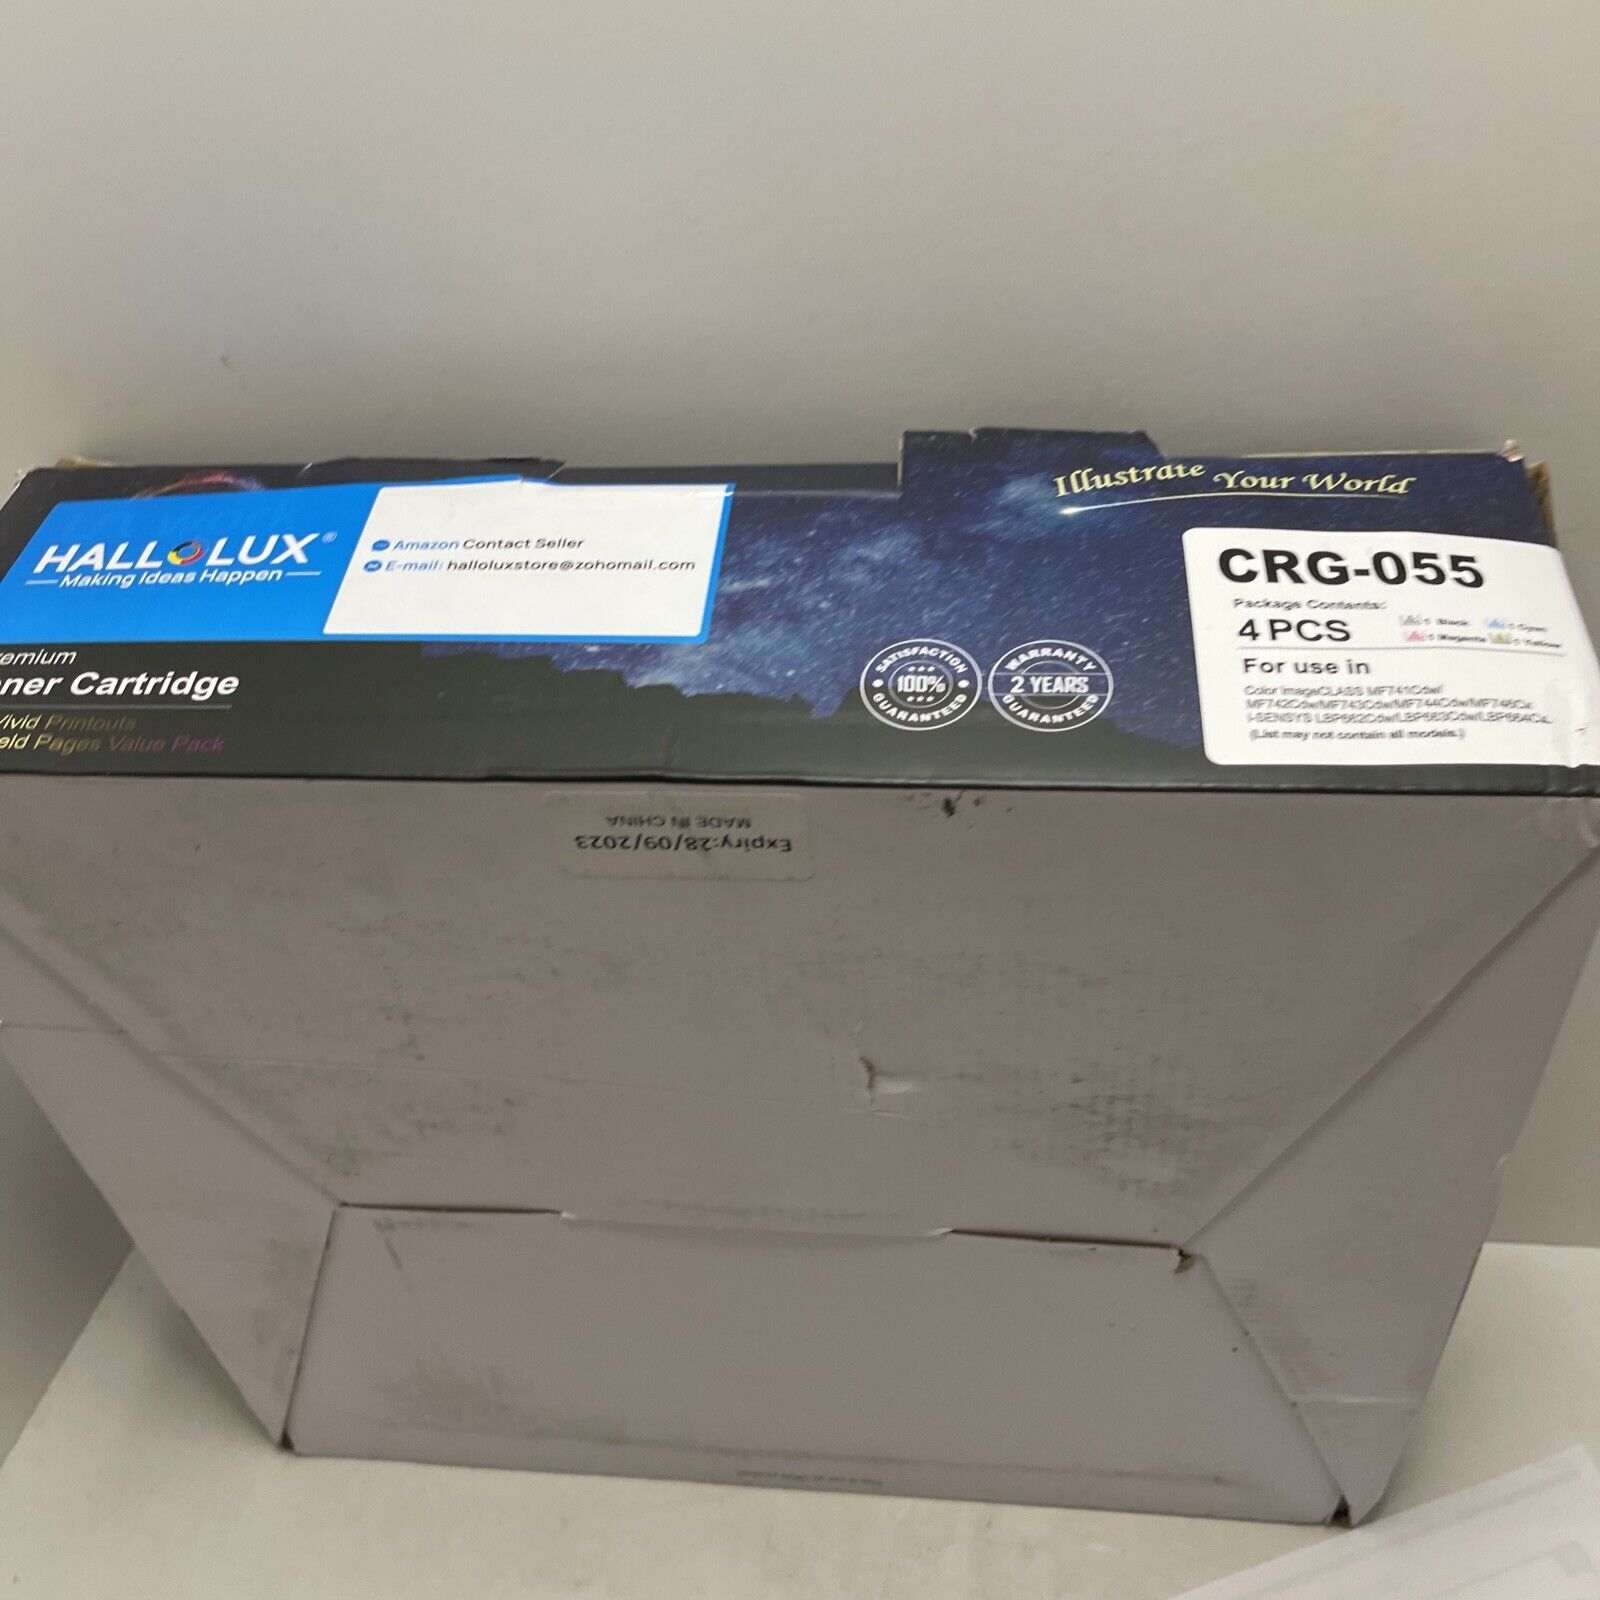 HALLOLUX Compatible Toner Cartridge Replacement CRG-055 4pcs